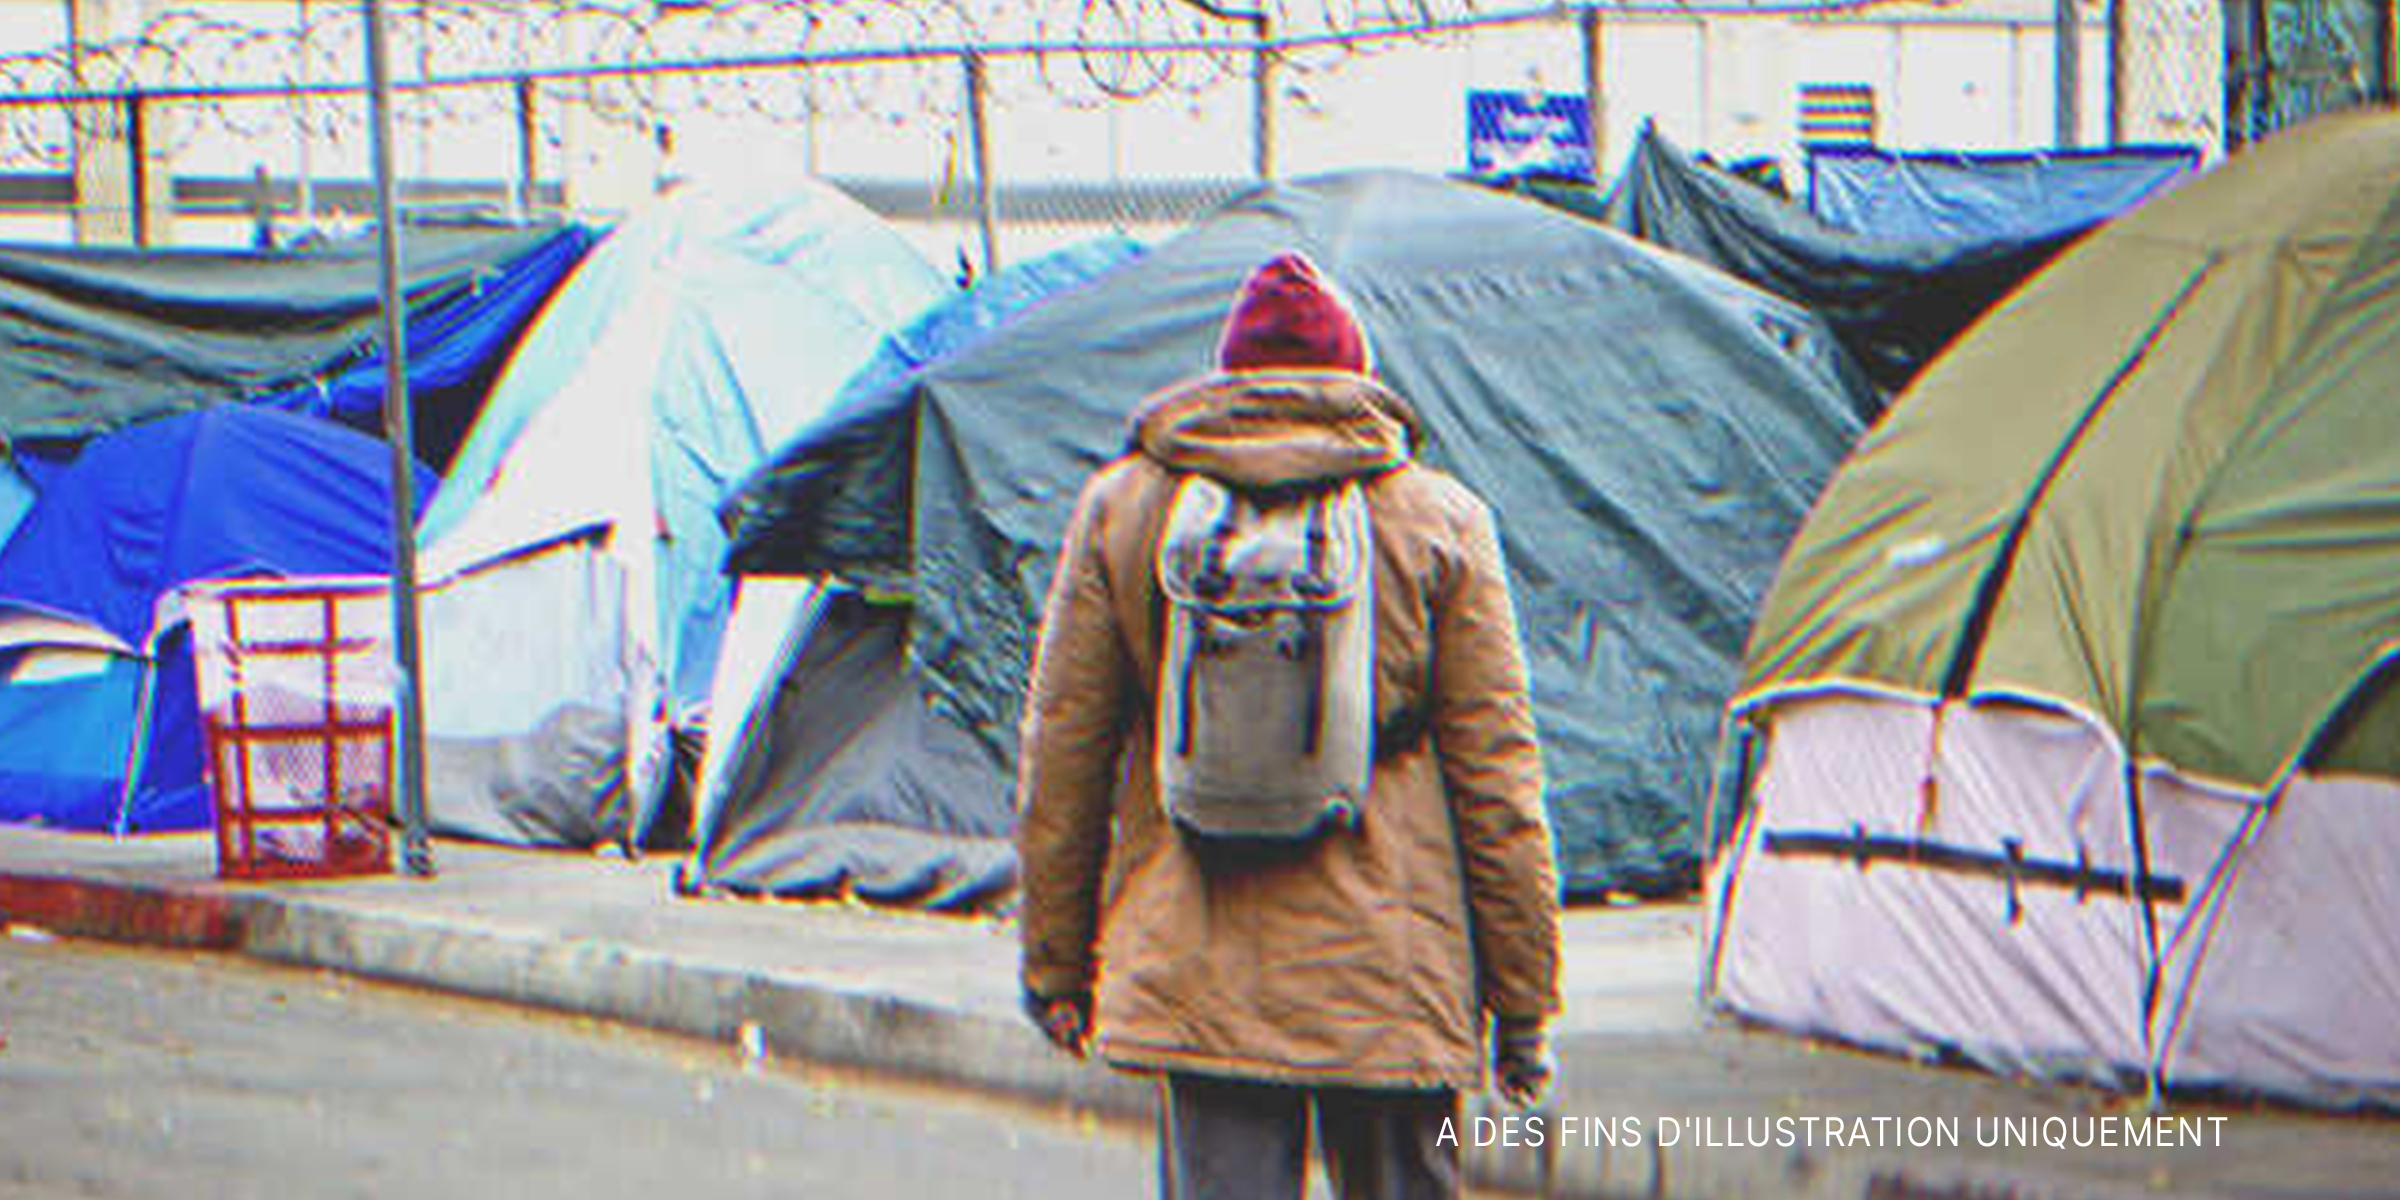 Homme devant des tentes. | Source : Shutterstock